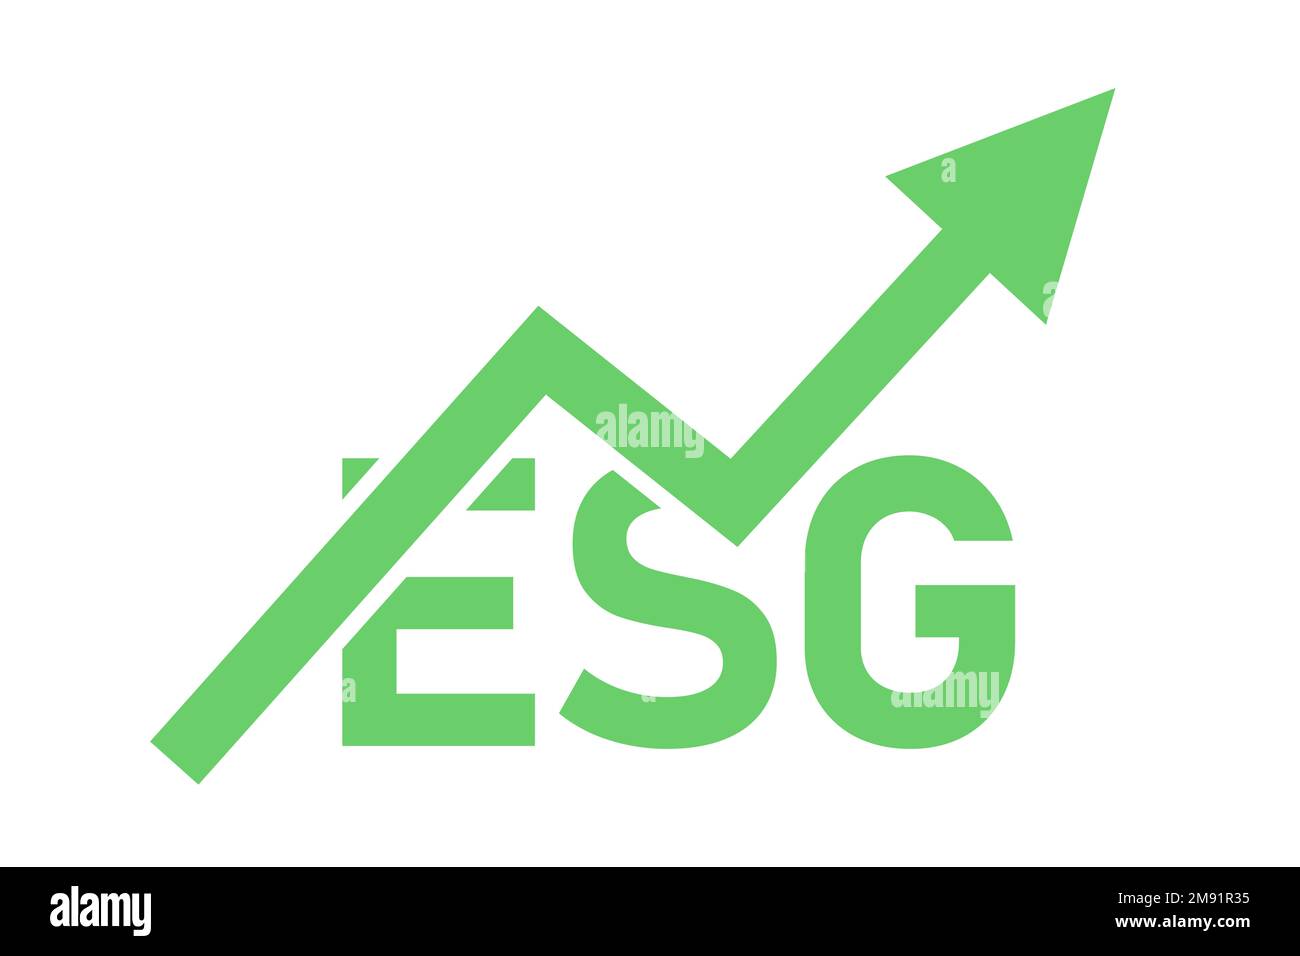 Investissement ESG et socialement responsable. Investissement financier et responsabilité sociale et environnementale. Texte et flèche indiquant le bénéfice, la croissance et l'ir Banque D'Images